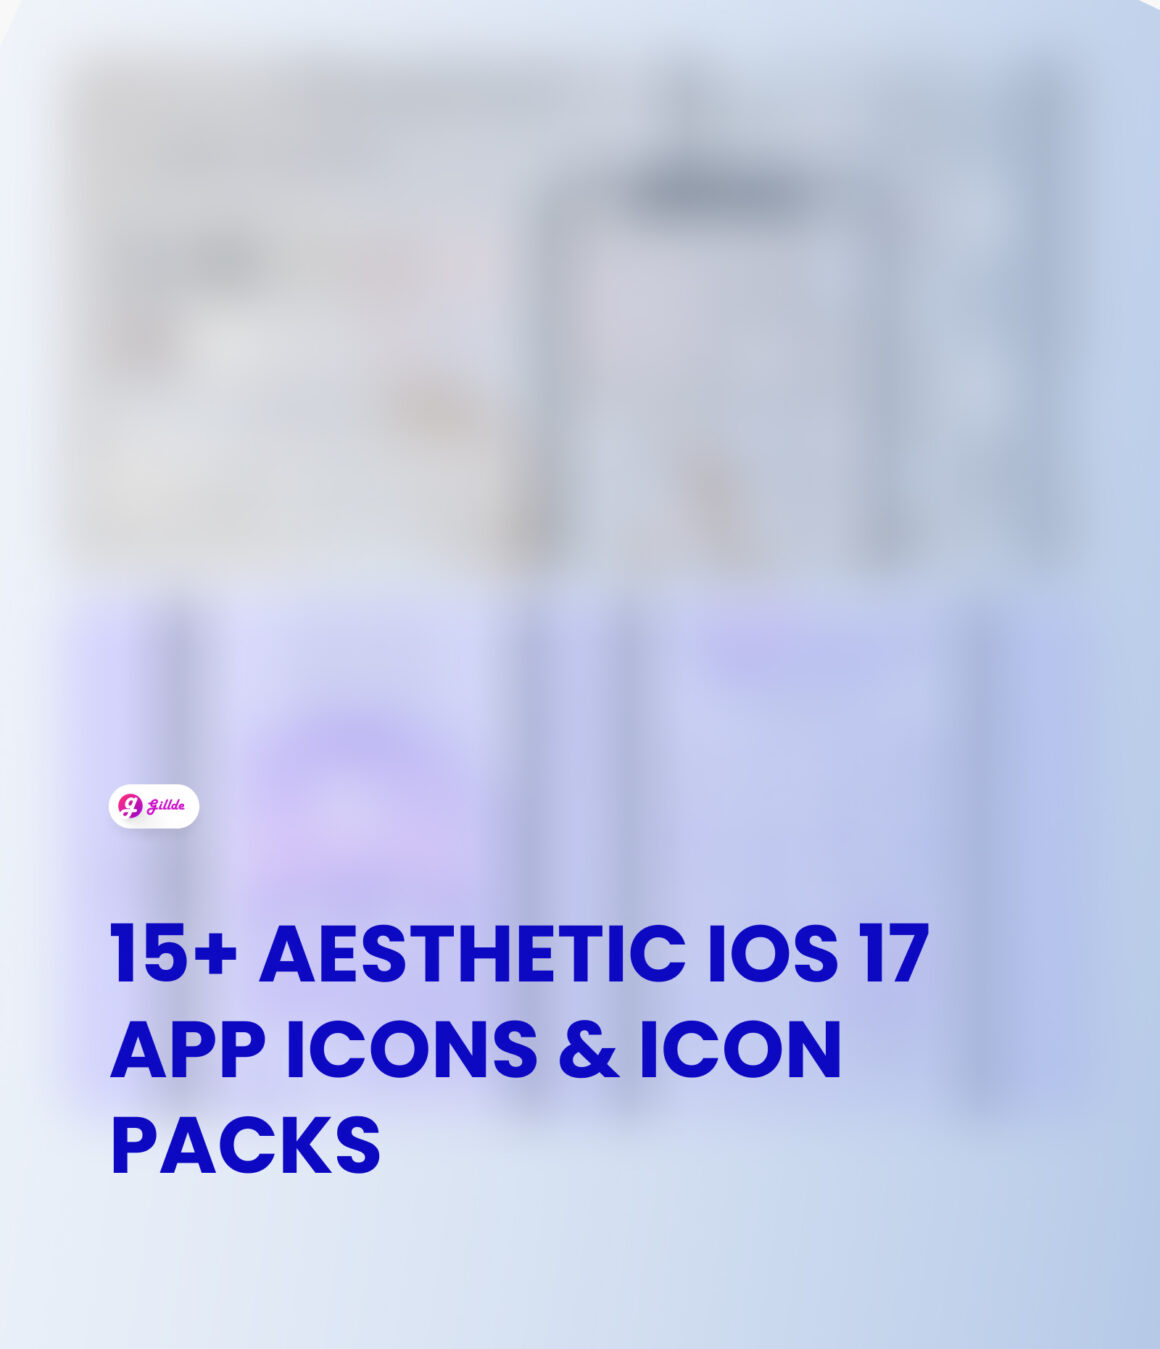 Aesthetic iOS 17 App Icons